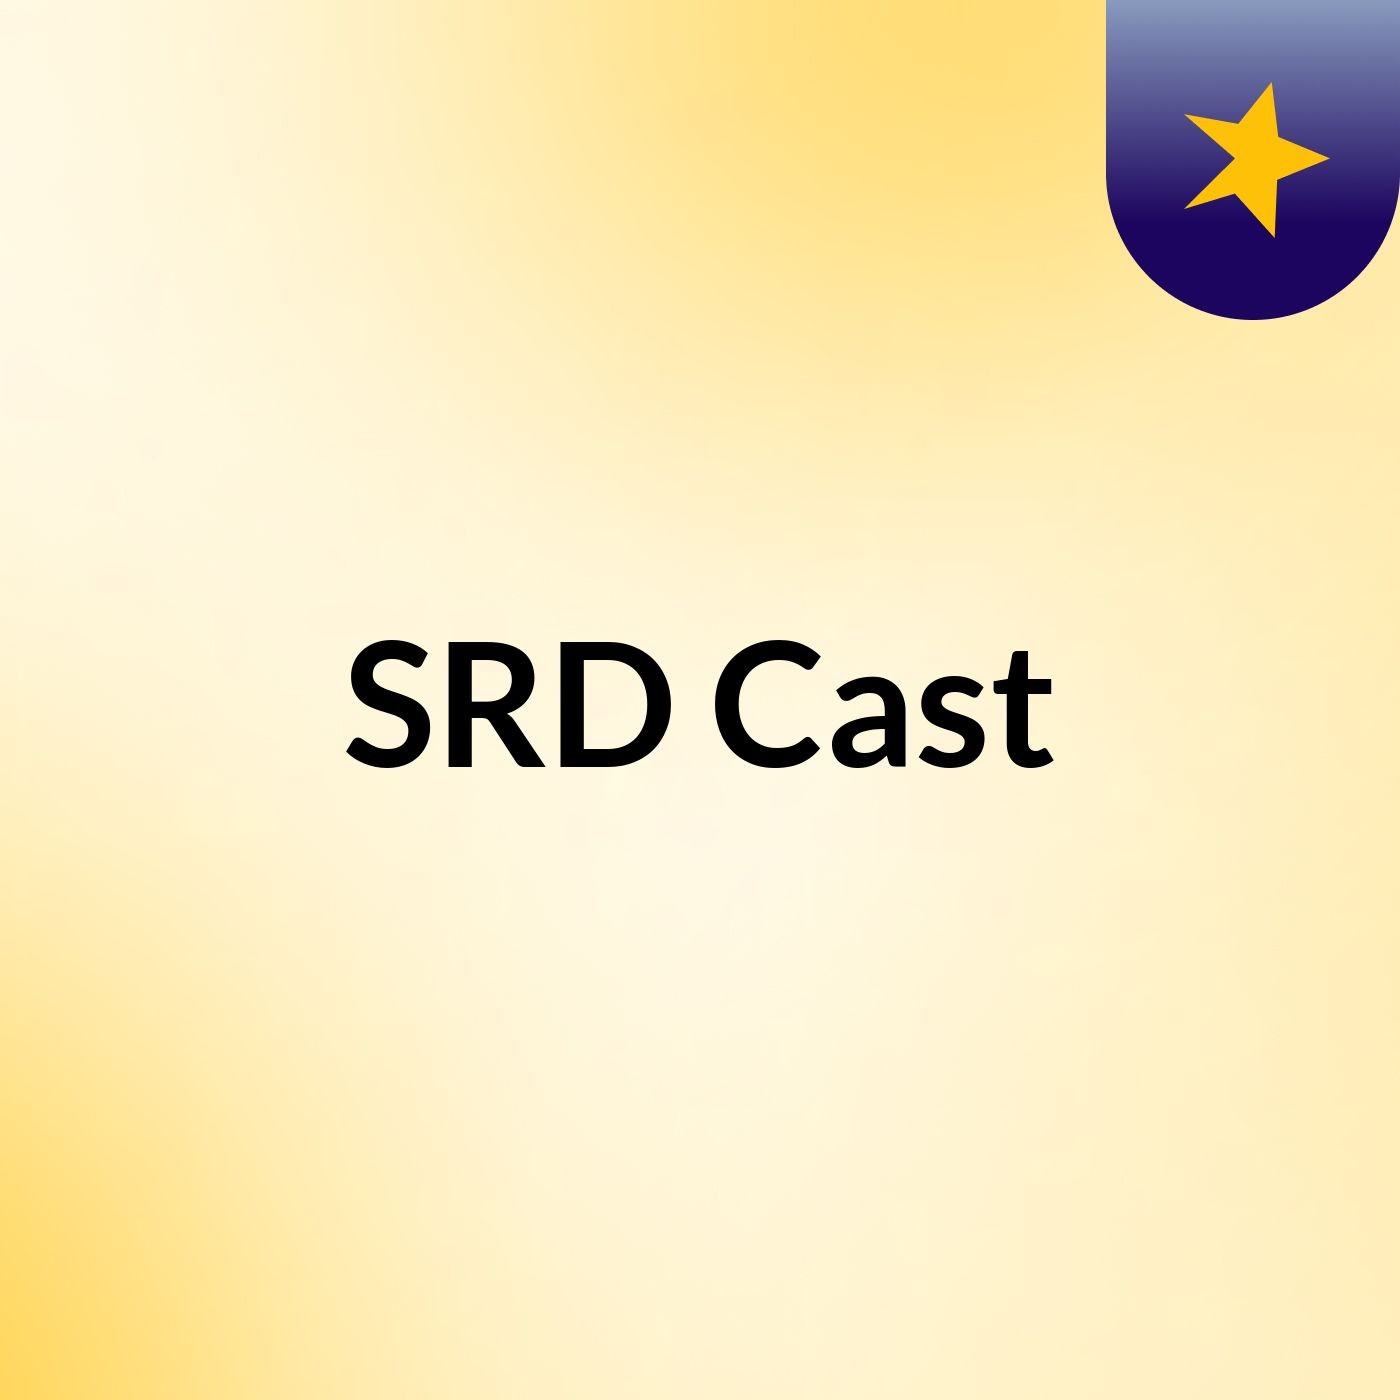 SRD Cast